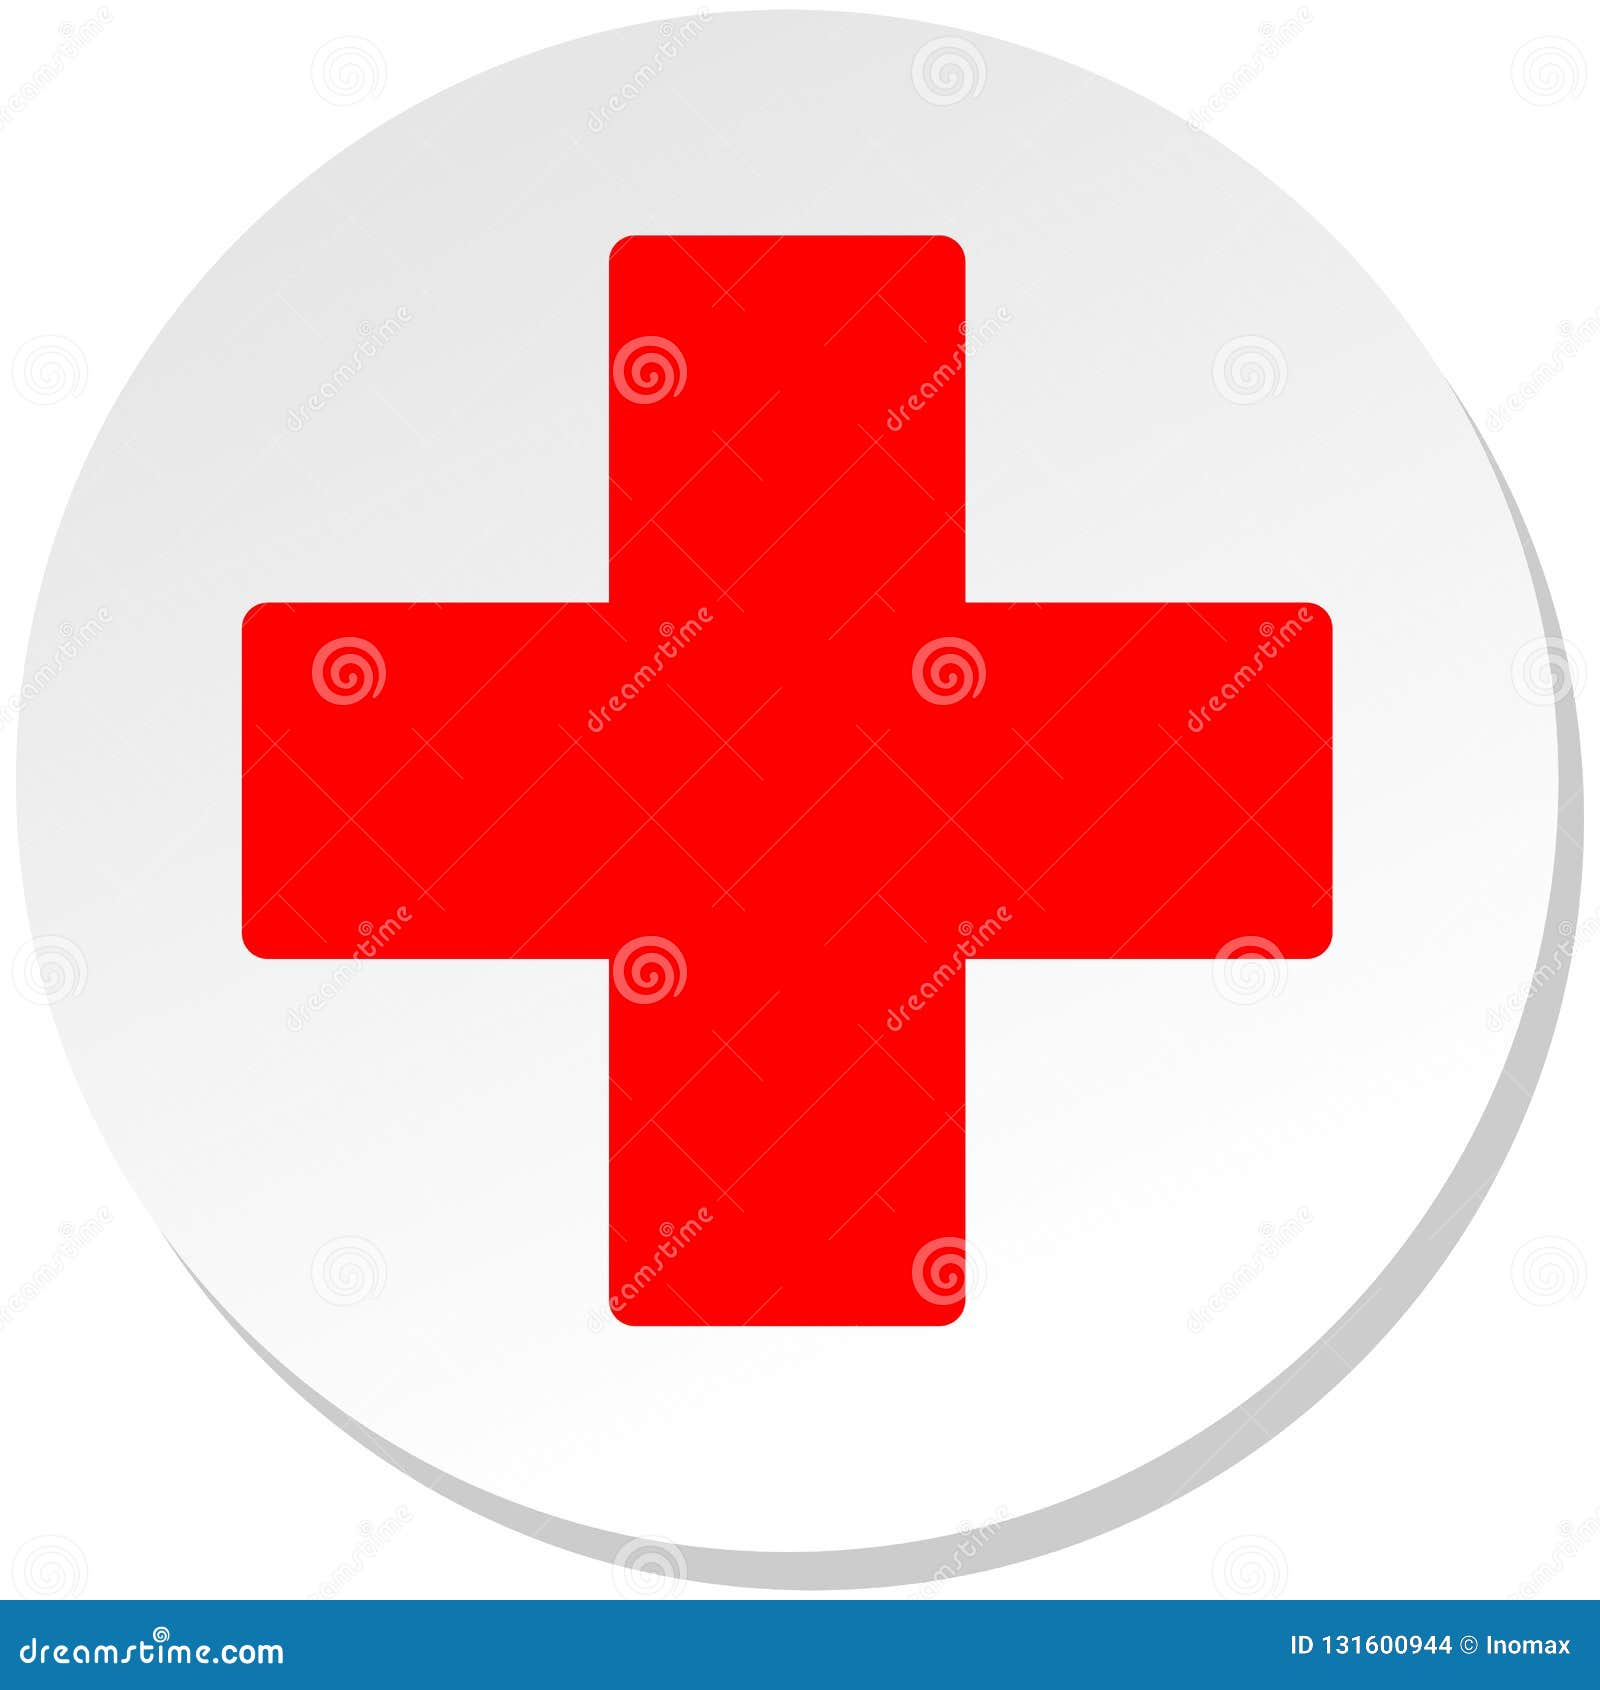 Chữ thập đỏ trên hình tròn trắng là biểu tượng đặc trưng và được biết đến trên toàn thế giới. Xem hình ảnh liên quan để hiểu hơn về ý nghĩa của biểu tượng này và vai trò quan trọng của Hội Chữ thập đỏ.